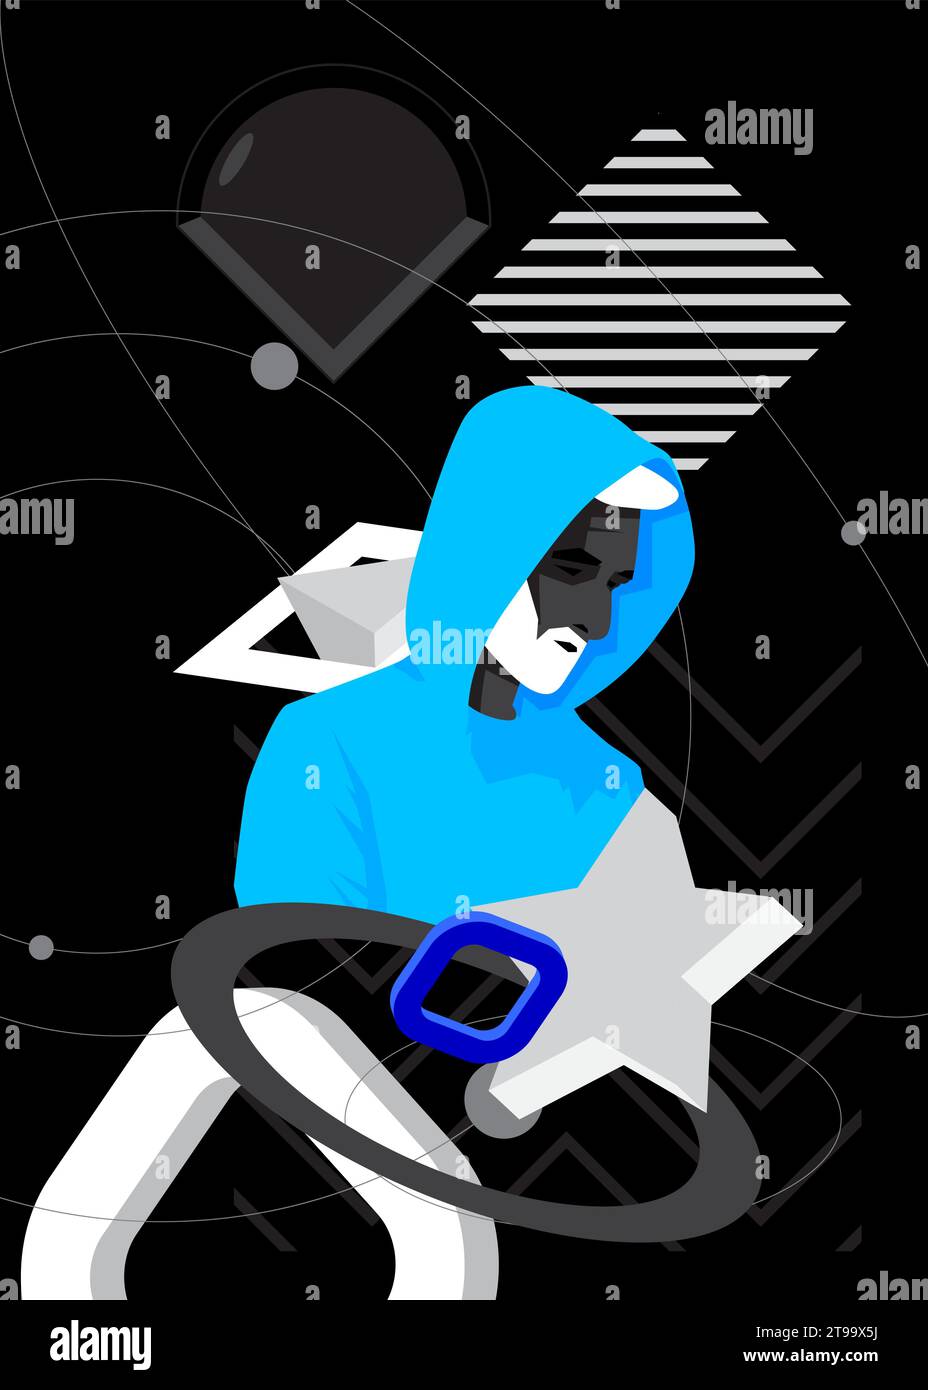 Póster retro geométrico azul, blanco y negro con cabeza masculina, estatua de pecho. Elementos geométricos mínimos con escultura de busto de hombre. Forma vintage Ilustración del Vector